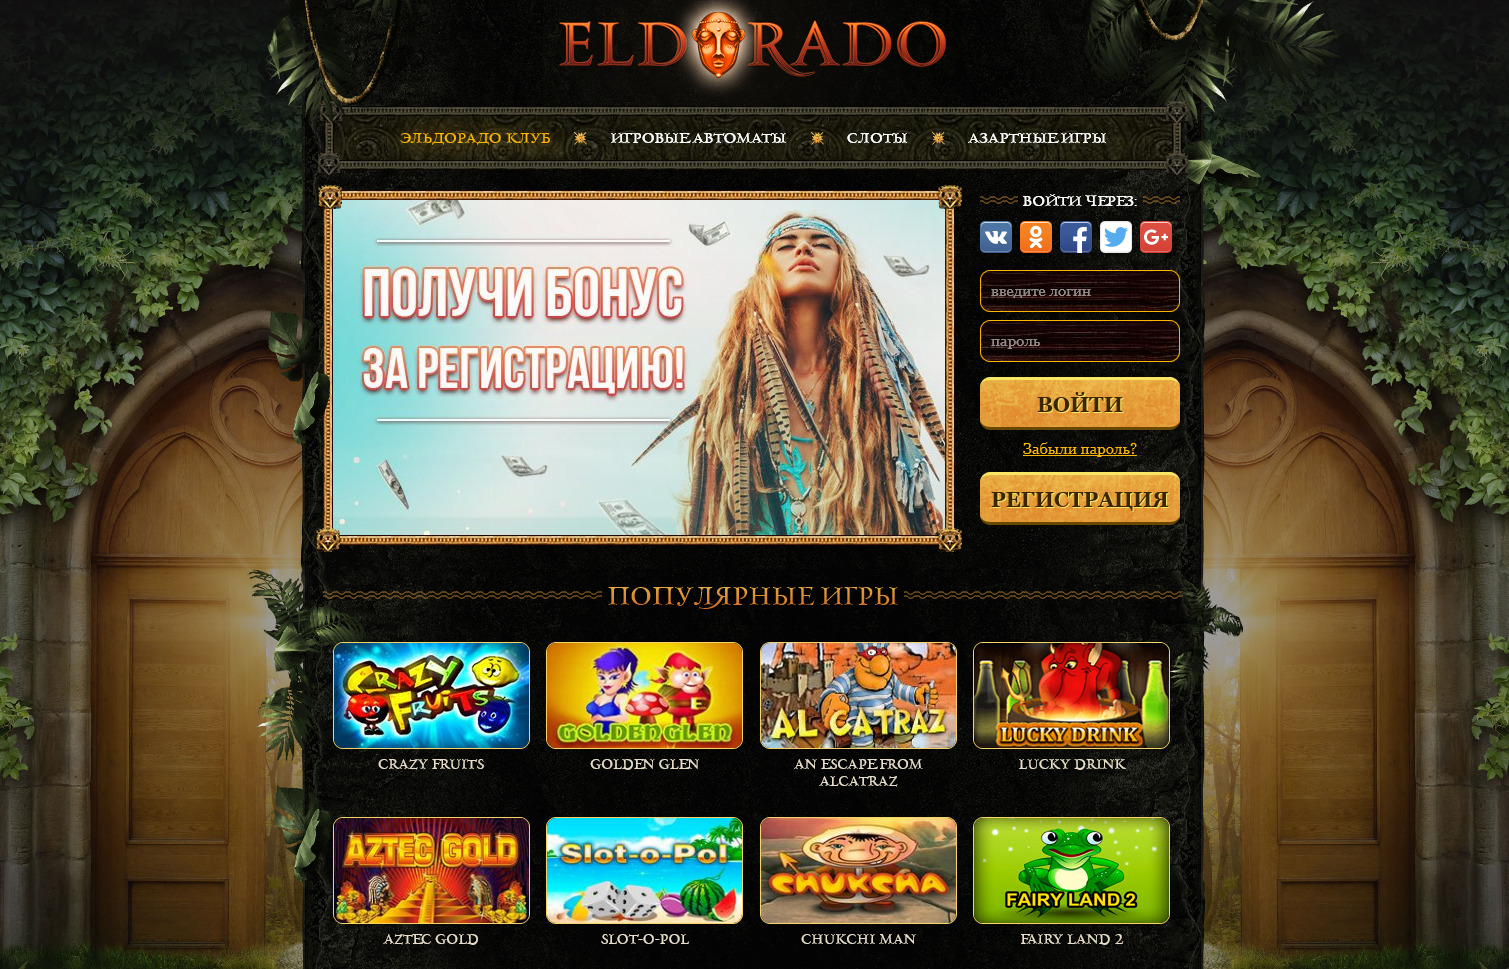 Eldoradoclub Com Игровые Автоматы